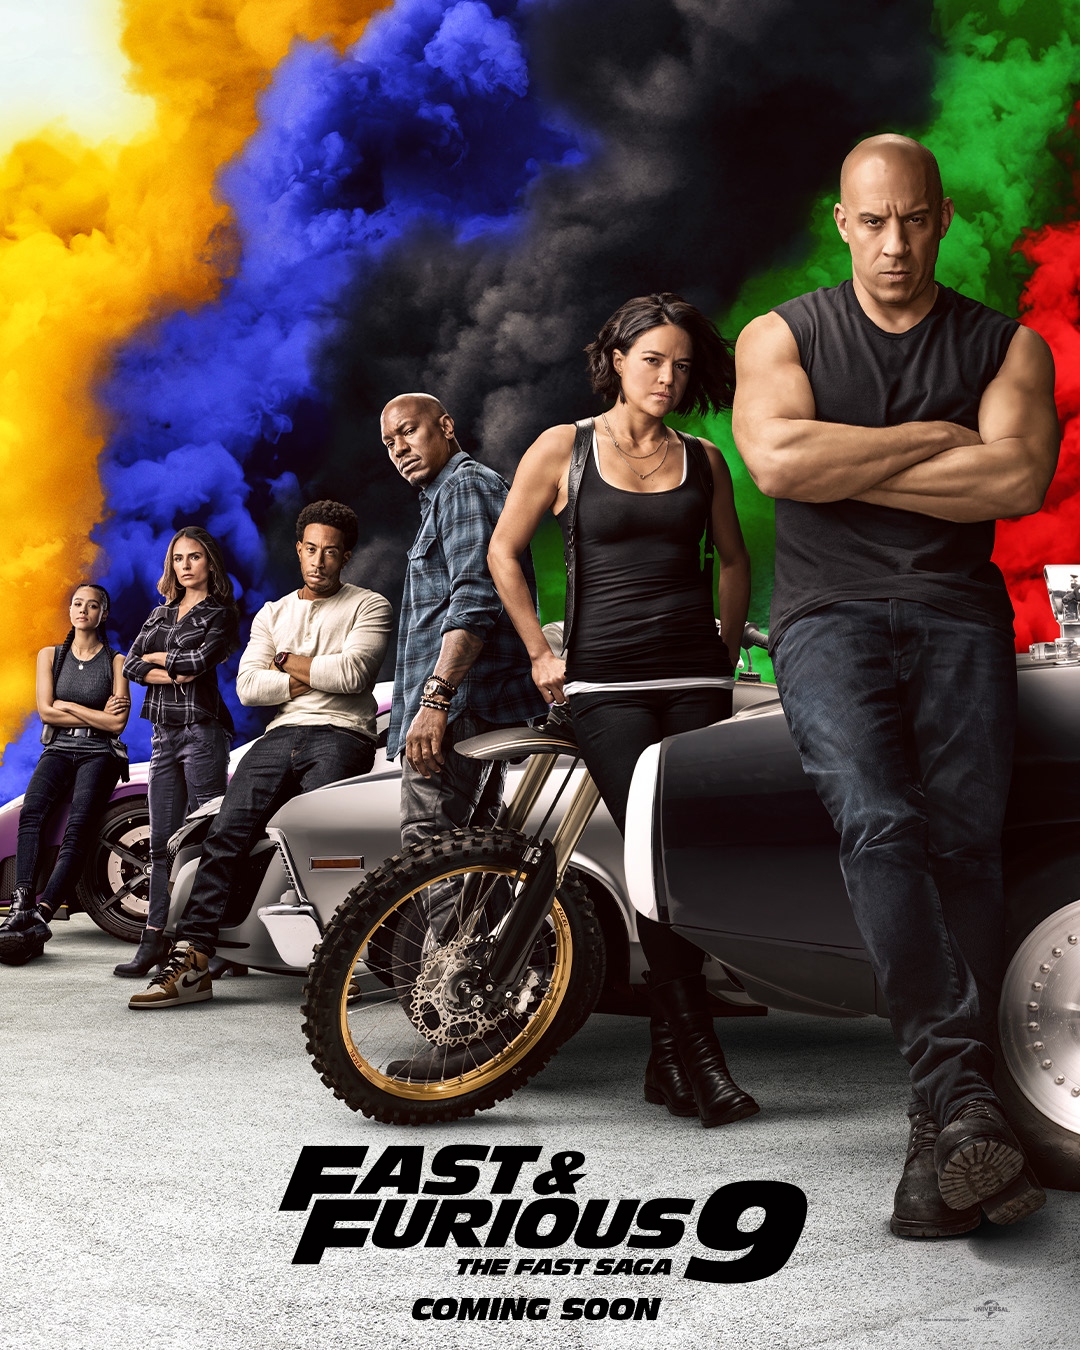 “Fast & furious 9” đạt doanh thu khủng hứa hẹn phục hồi phòng vé toàn cầu mùa phim hè 2021